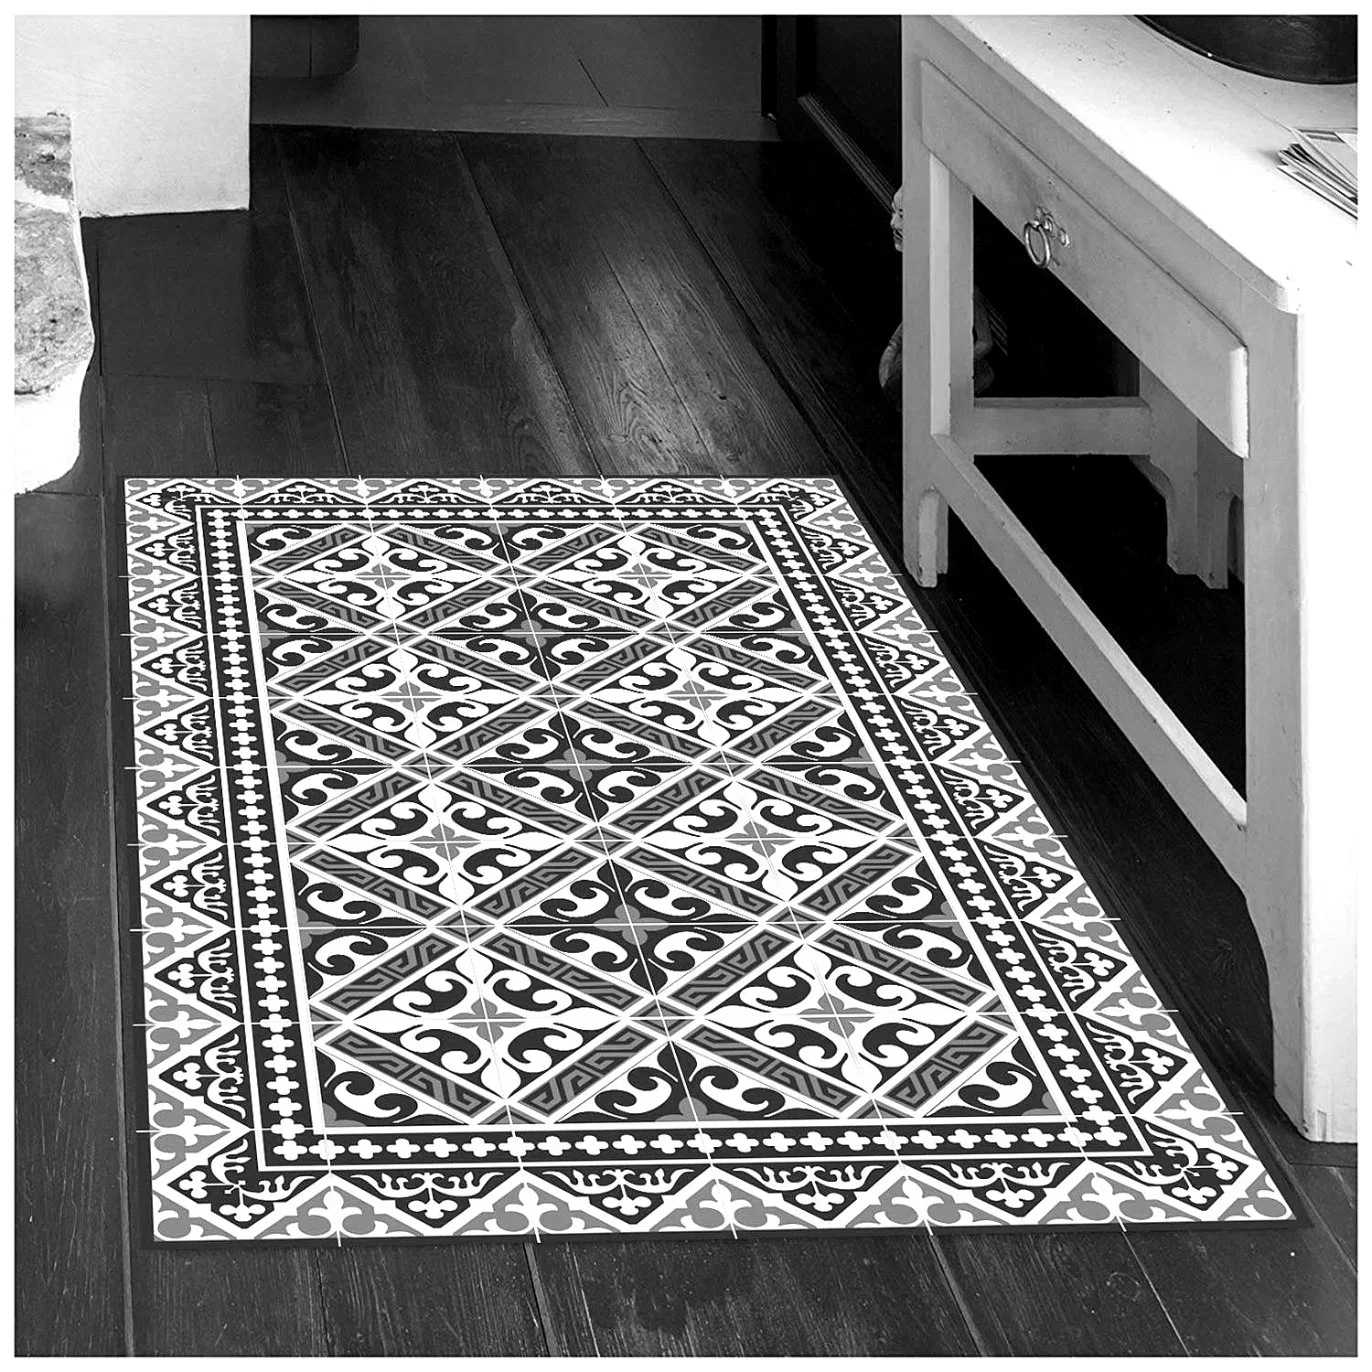 Vinyl Bodenmatte Linoleum Bodenbelag Teppich Bereich Teppich